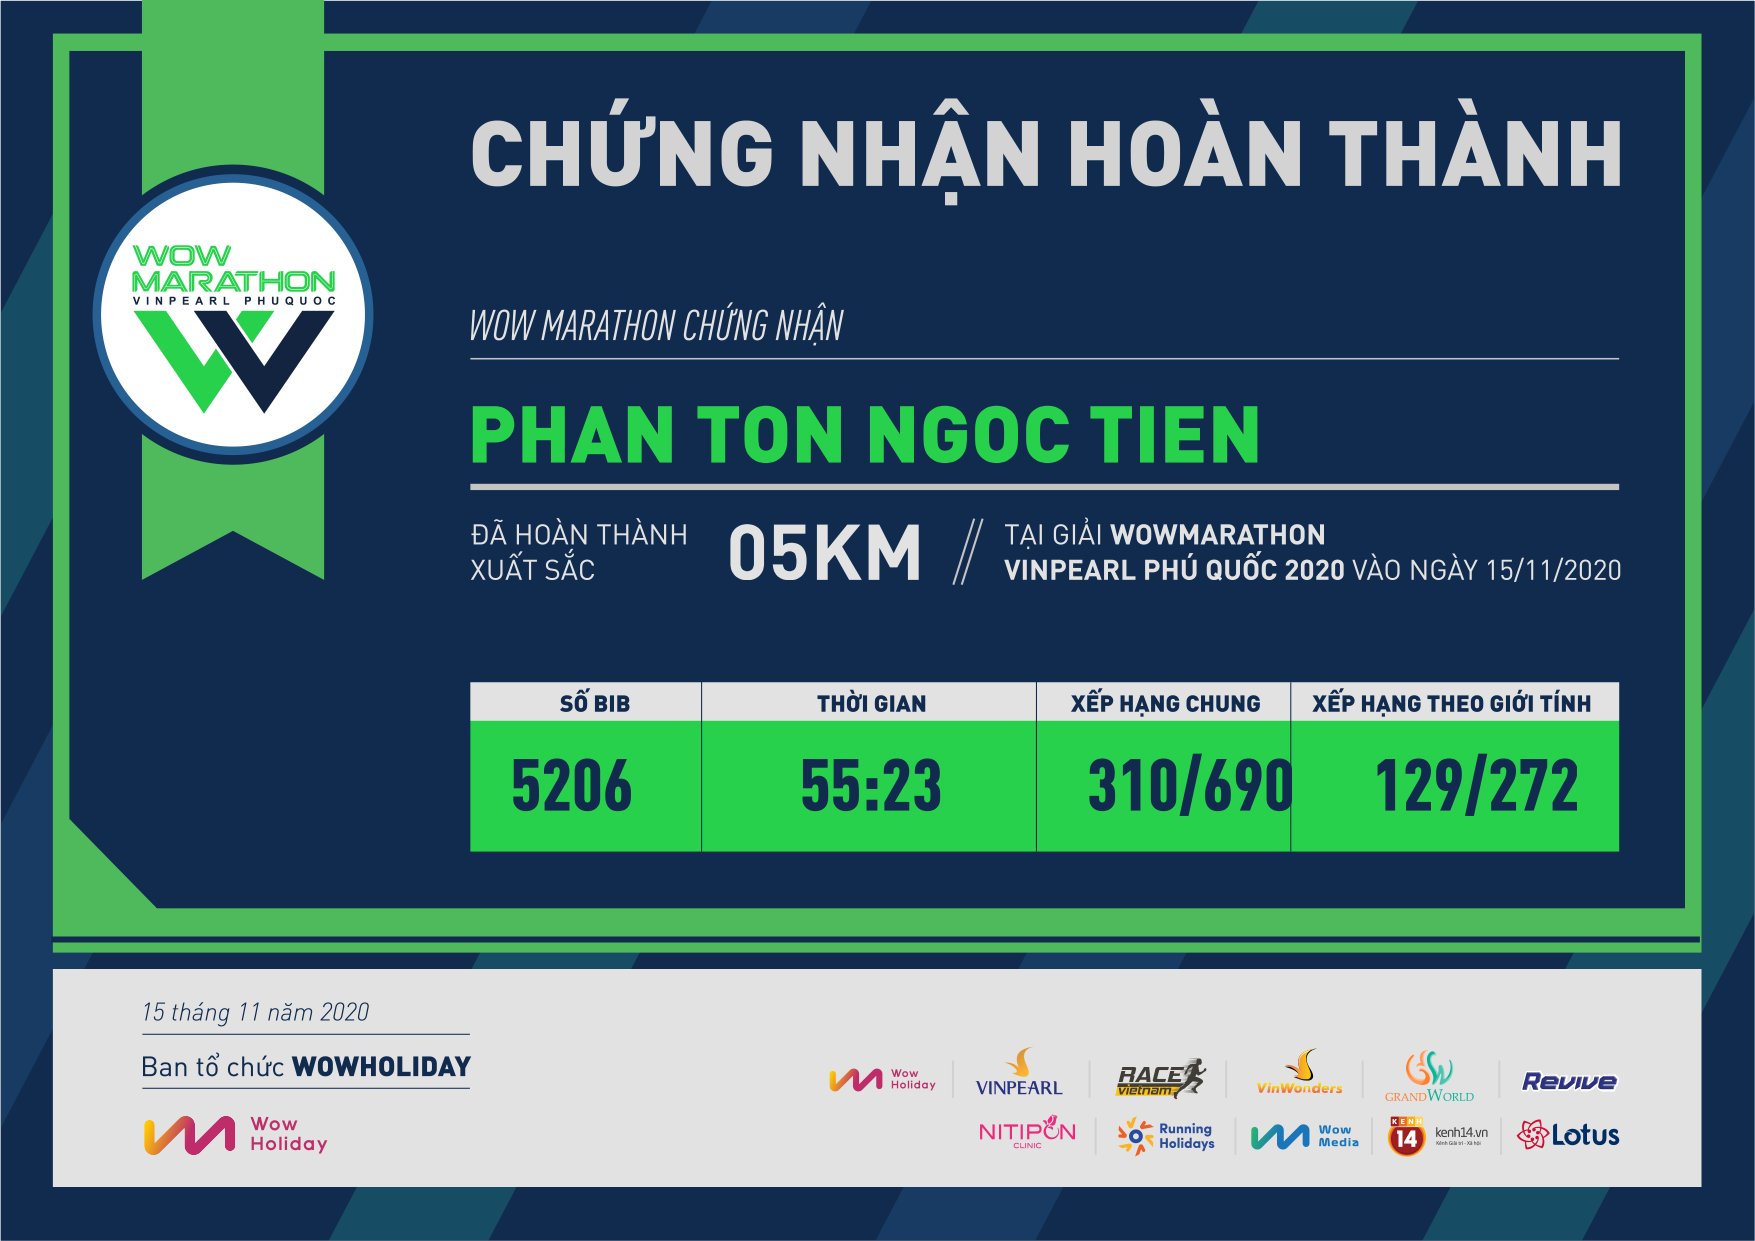 5206 - Phan ton ngoc Tien